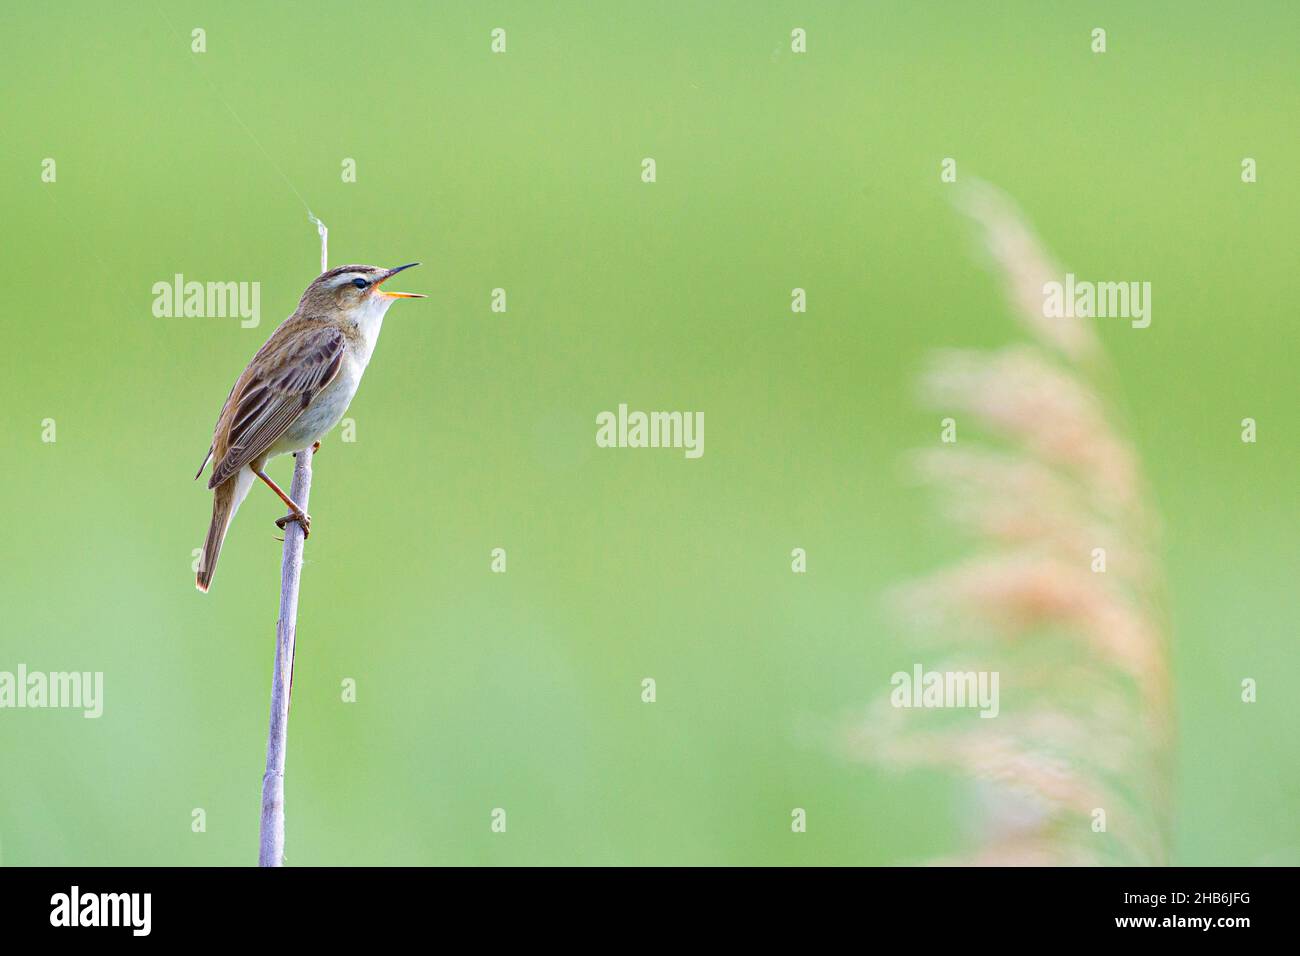 sedge warbler (Acrocephalus schoenobaenus), sings on a blade of reed, Austria Stock Photo